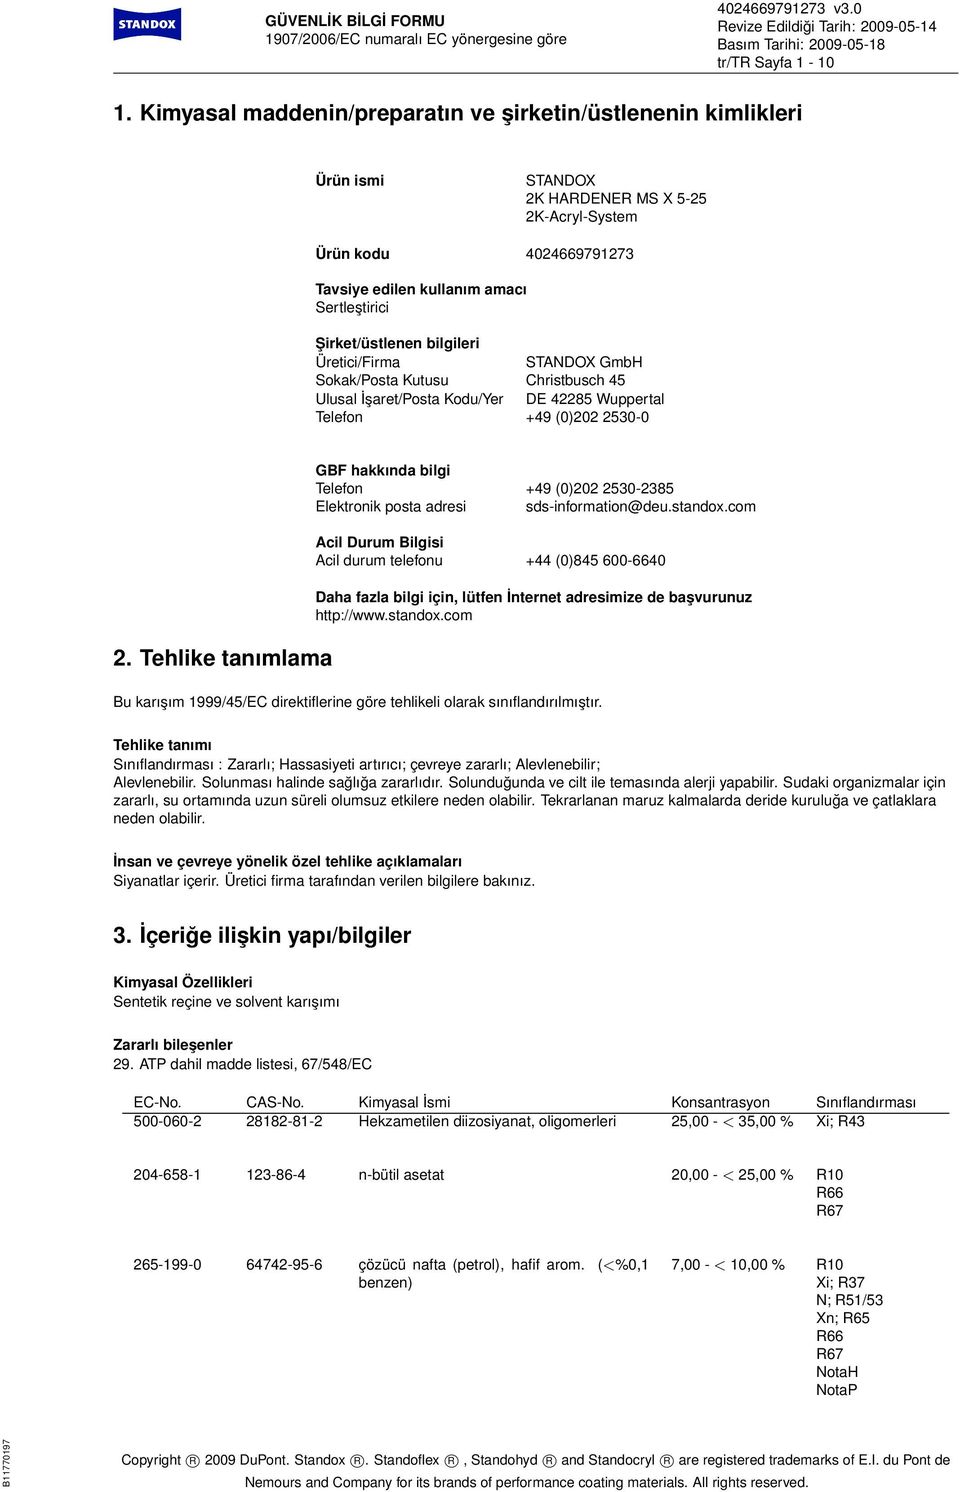 Şirket/üstlenen bilgileri Üretici/Firma STANDOX GmbH Sokak/Posta Kutusu Christbusch 45 Ulusal İşaret/Posta Kodu/Yer DE 42285 Wuppertal Telefon +49 (0)202 2530-0 2.